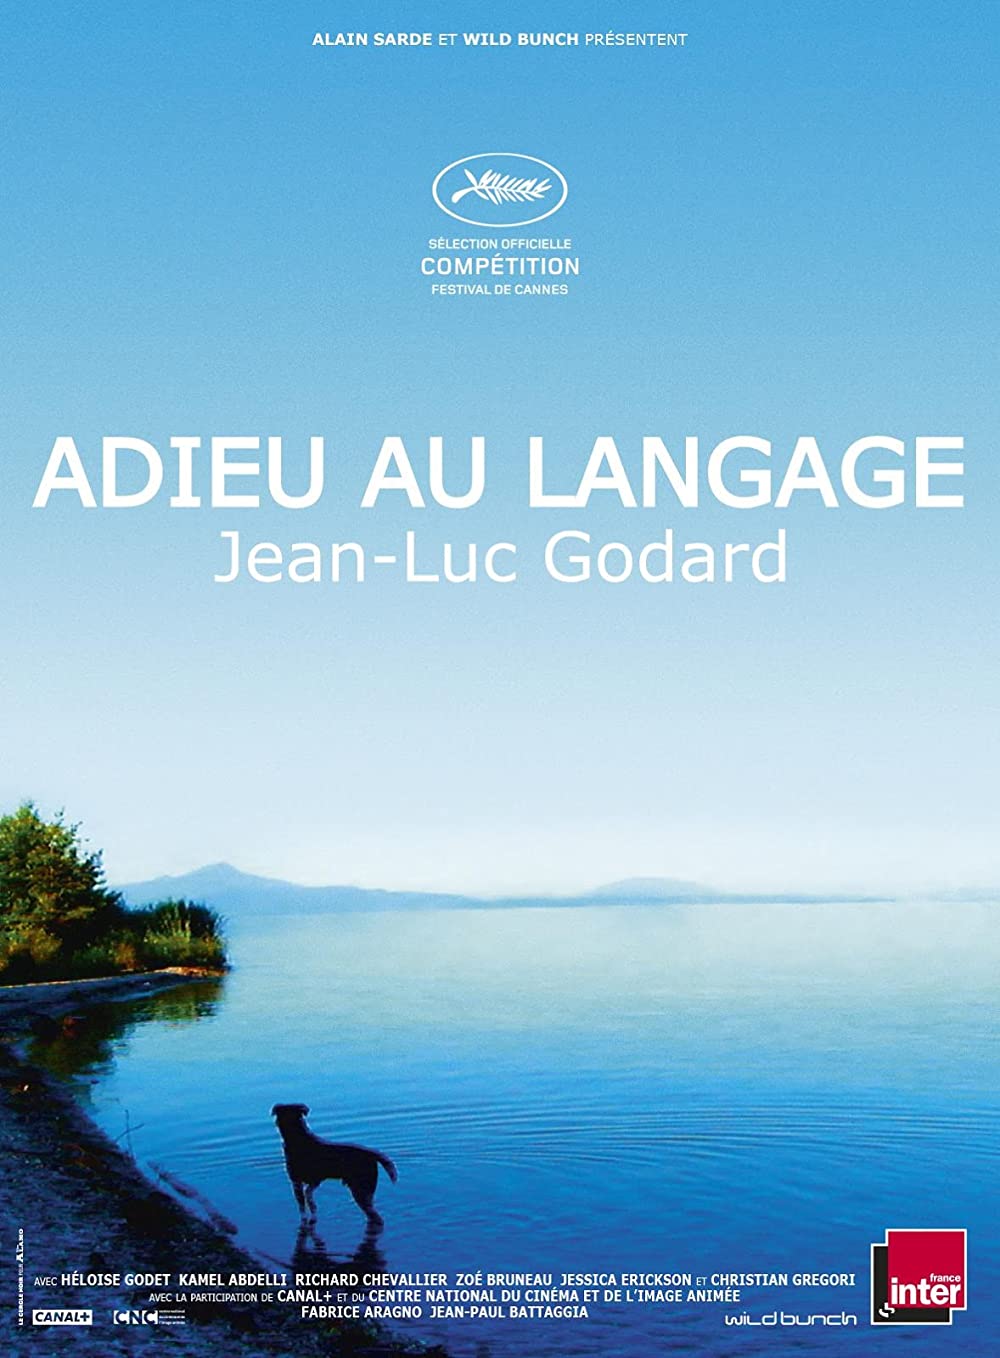 Filmbeschreibung zu Adieu au langage 3D